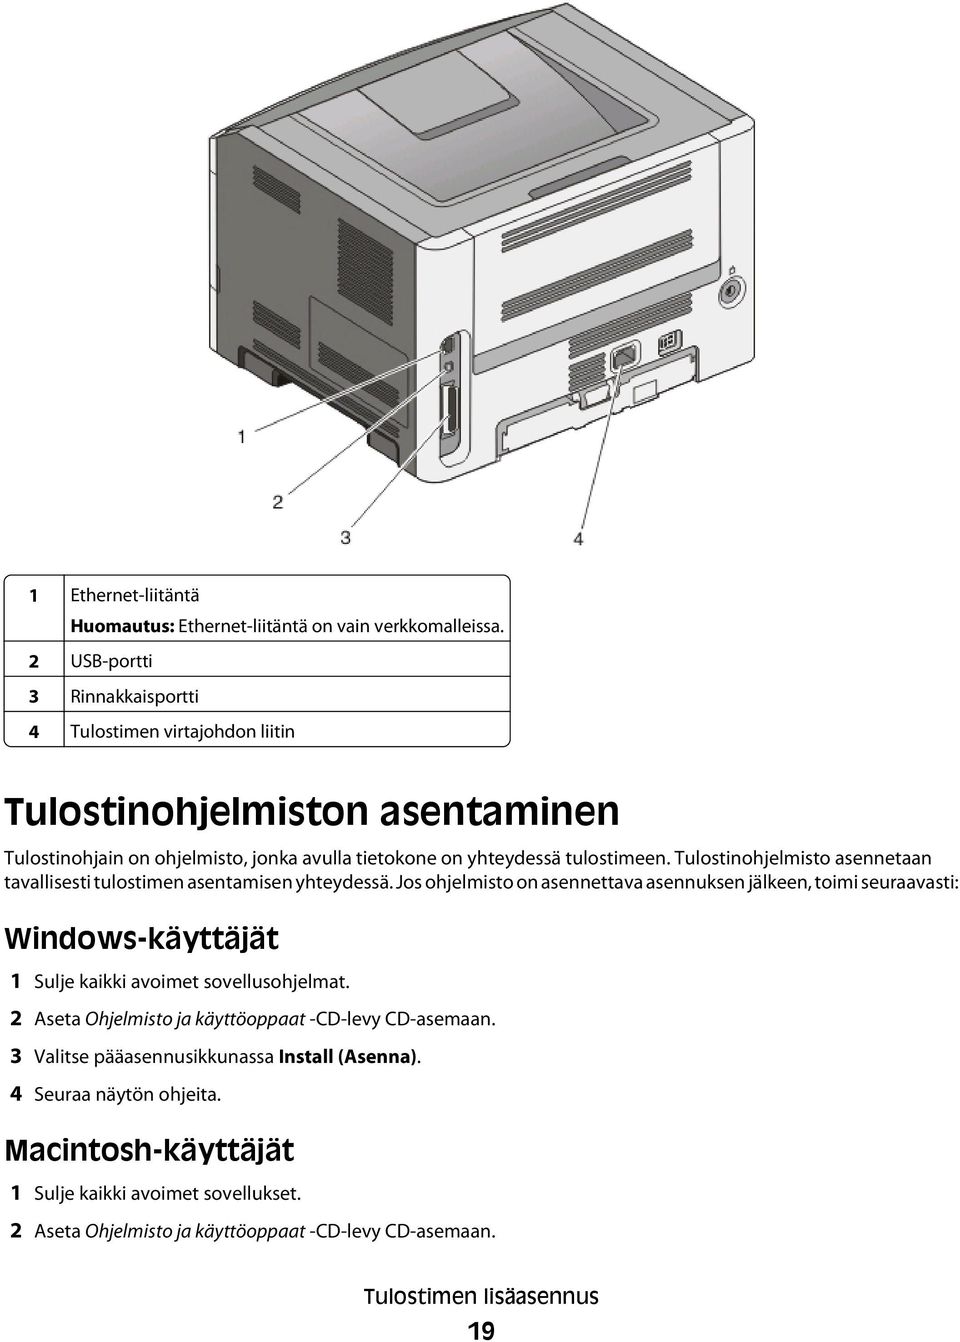 Tulostinohjelmisto asennetaan tavallisesti tulostimen asentamisen yhteydessä.